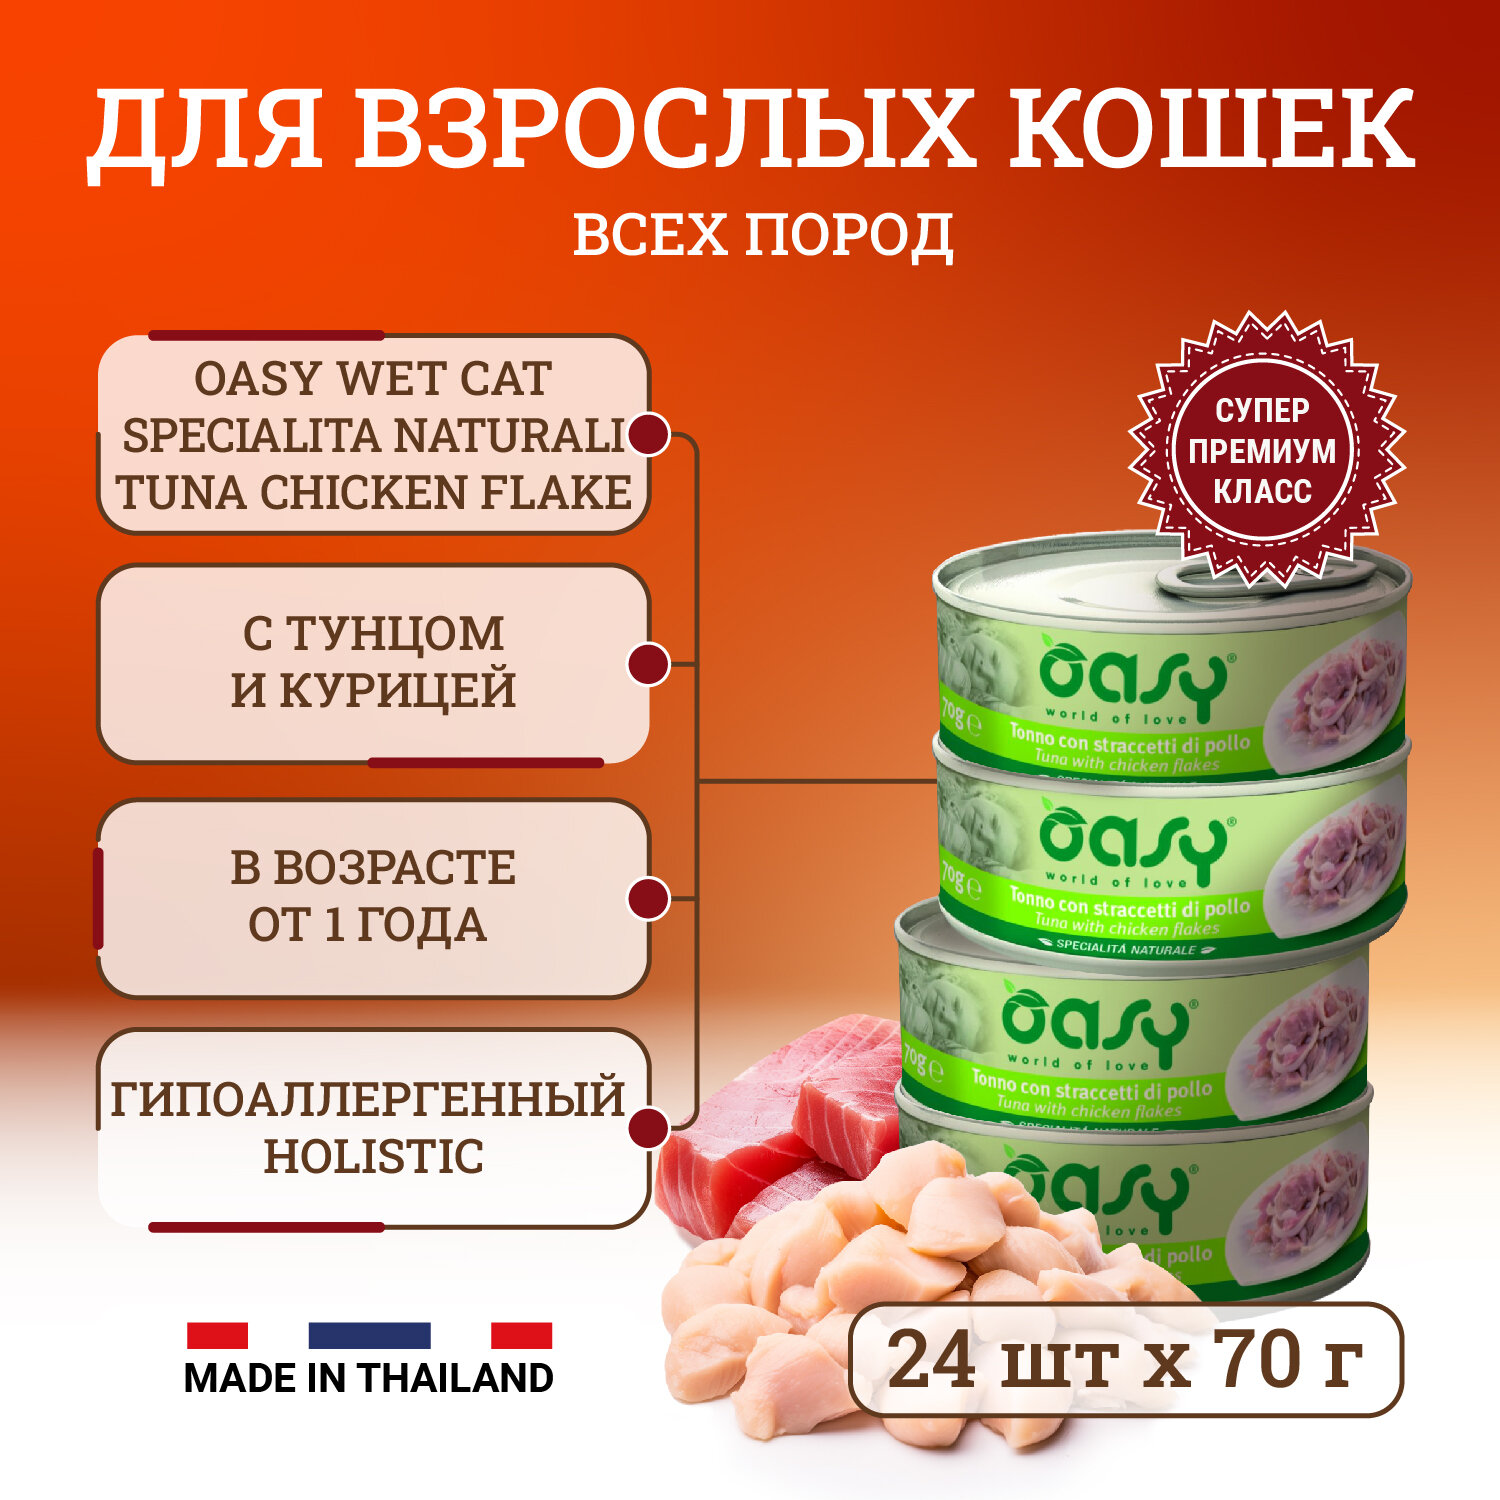 Oasy Wet Cat Specialita Naturali Tuna Chicken flake влажный корм для взрослых кошек, дополнительное питание с тунцом и курицей, в консервах - 70 г х 24 шт